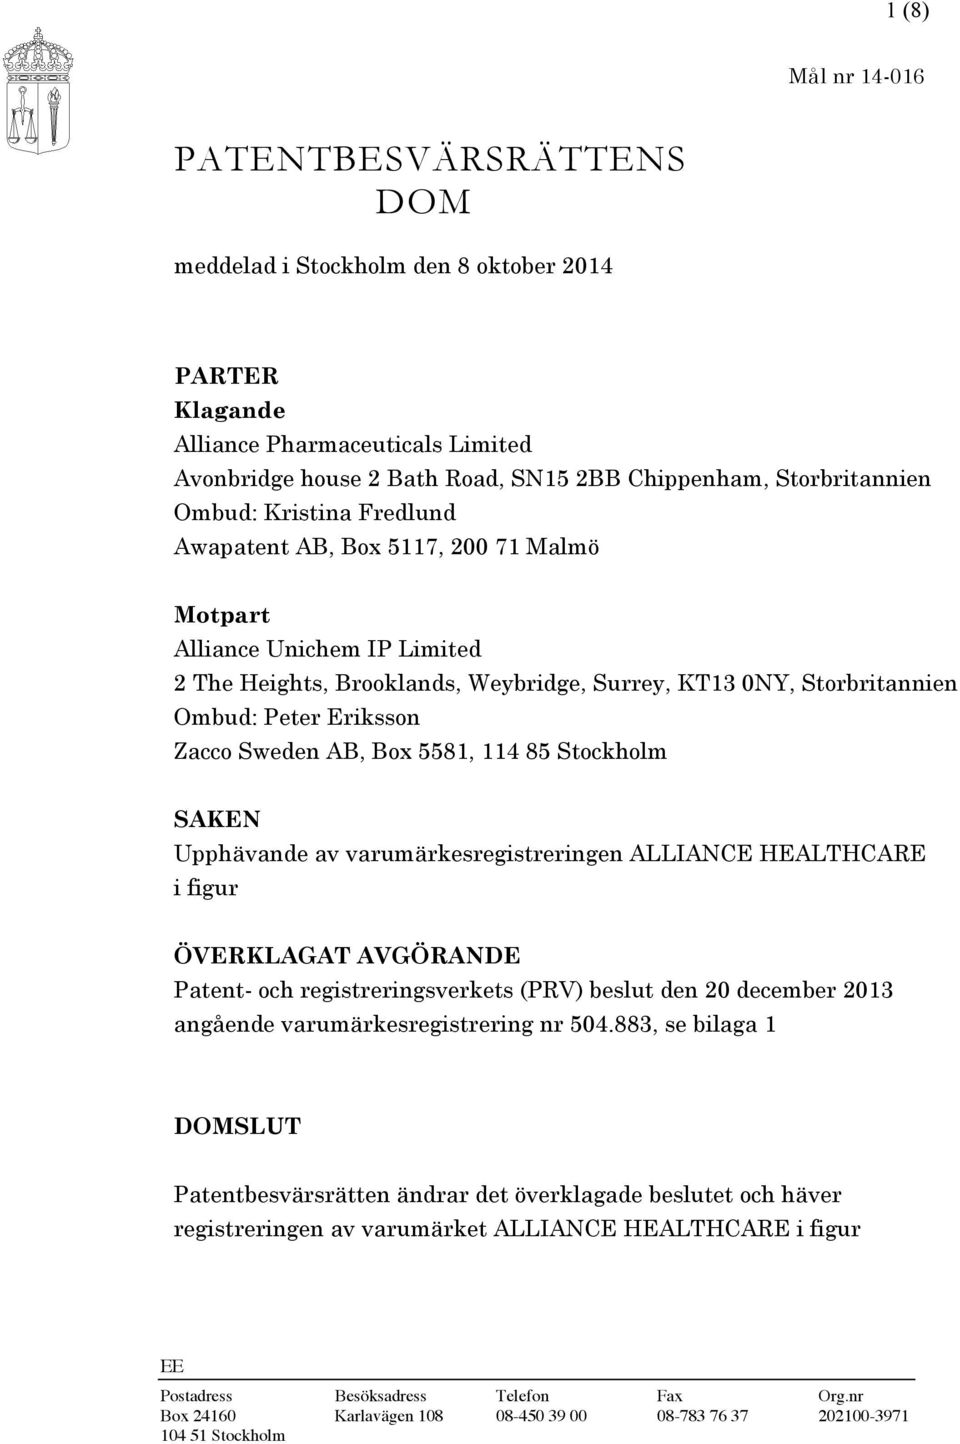 Sweden AB, Box 5581, 114 85 Stockholm SAKEN Upphävande av varumärkesregistreringen ALLIANCE HEALTHCARE i figur ÖVERKLAGAT AVGÖRANDE Patent- och registreringsverkets (PRV) beslut den 20 december 2013